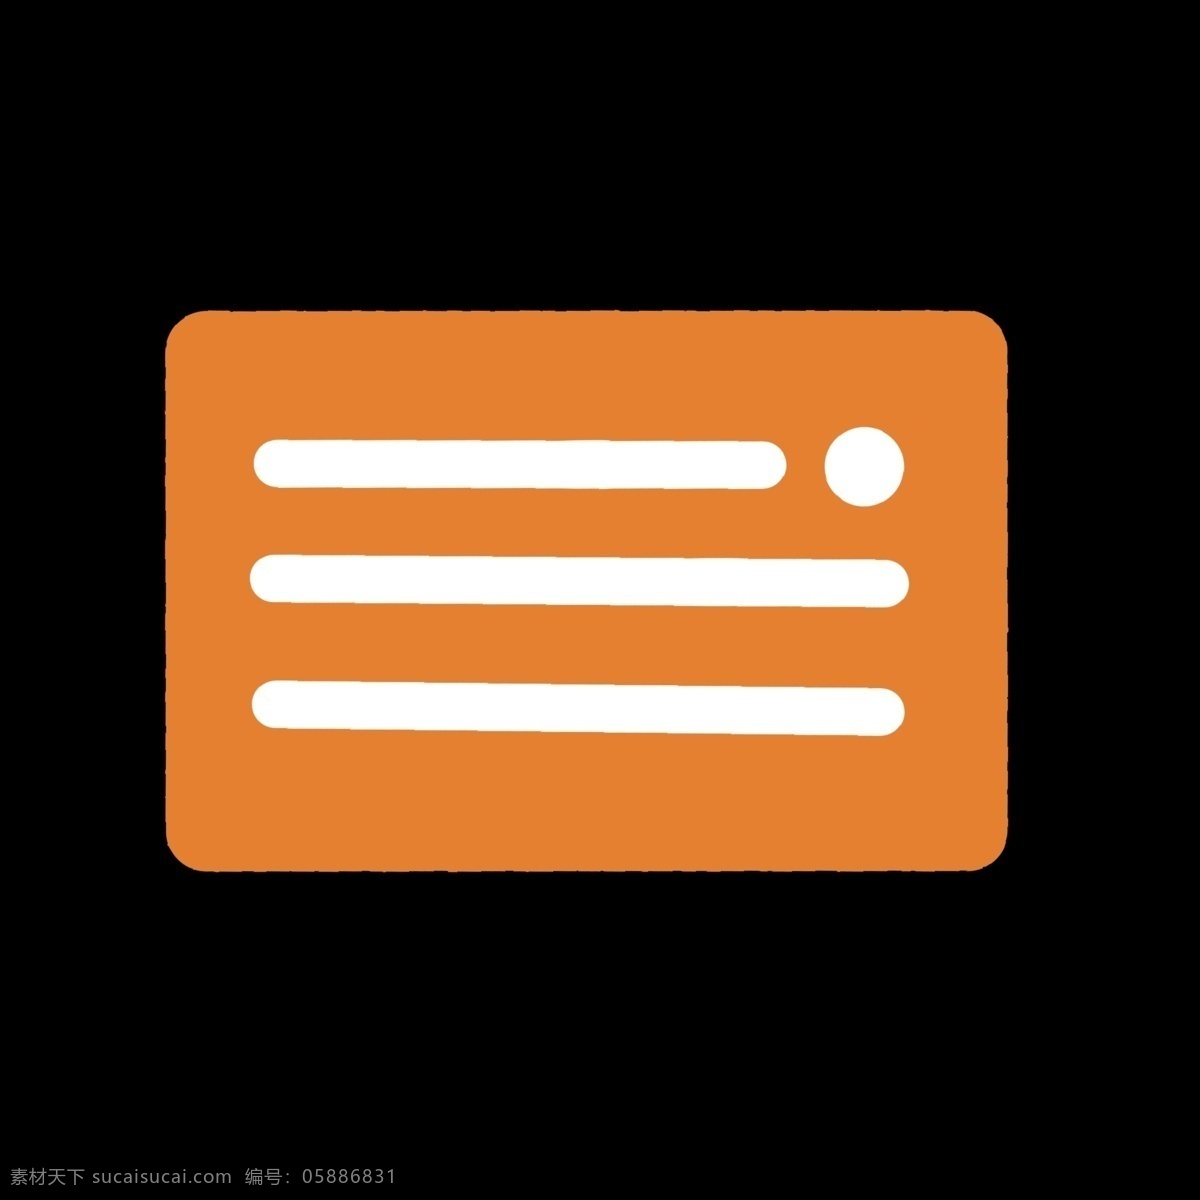 橘黄色 信用卡 样式 图标 暖色 银行卡 几何图形 彩色 白色 视频图标 卡通 ppt可用 简单 简约 简洁